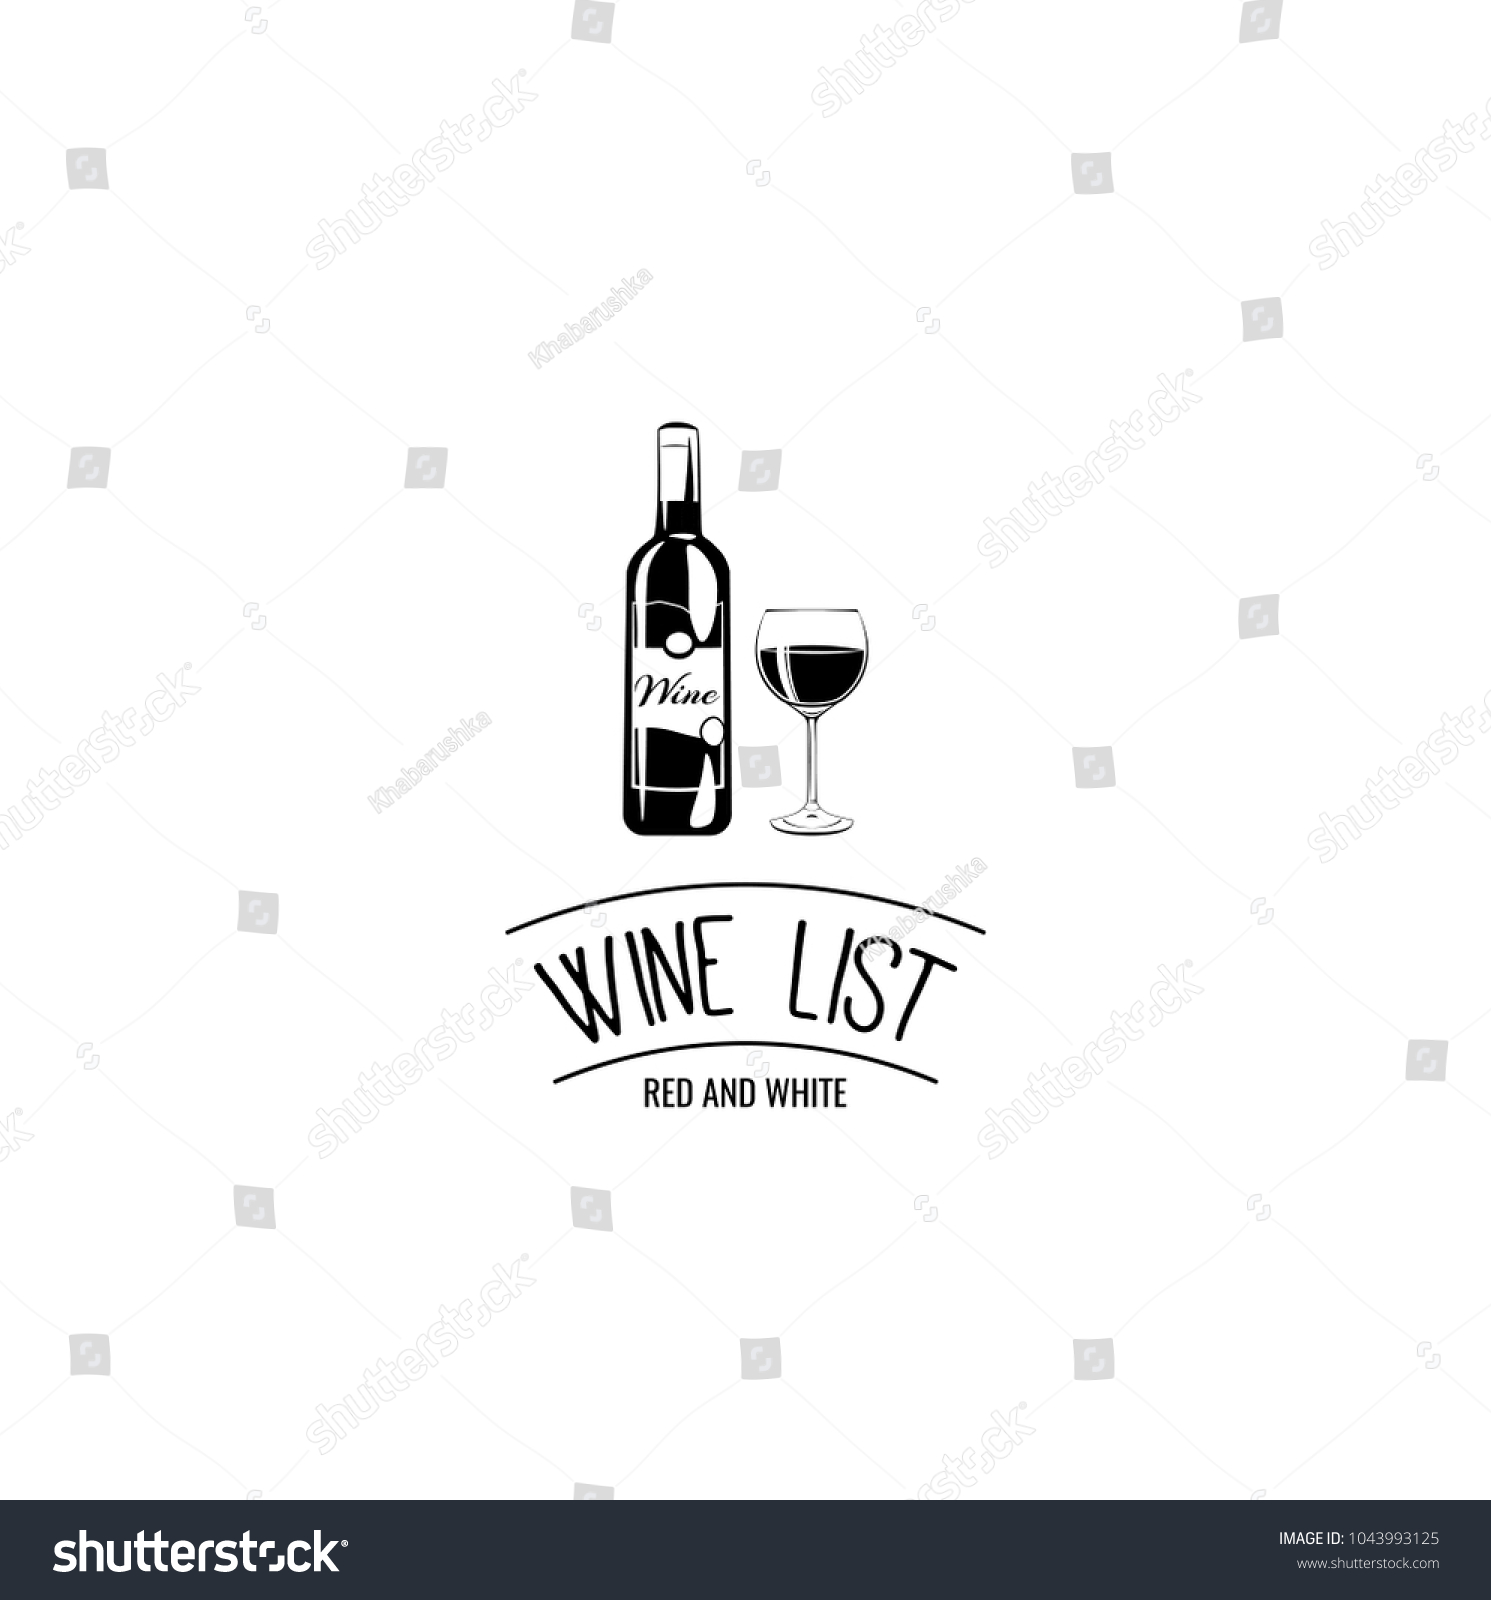 Wine List Design Bottle Glass Stock Vector Royalty